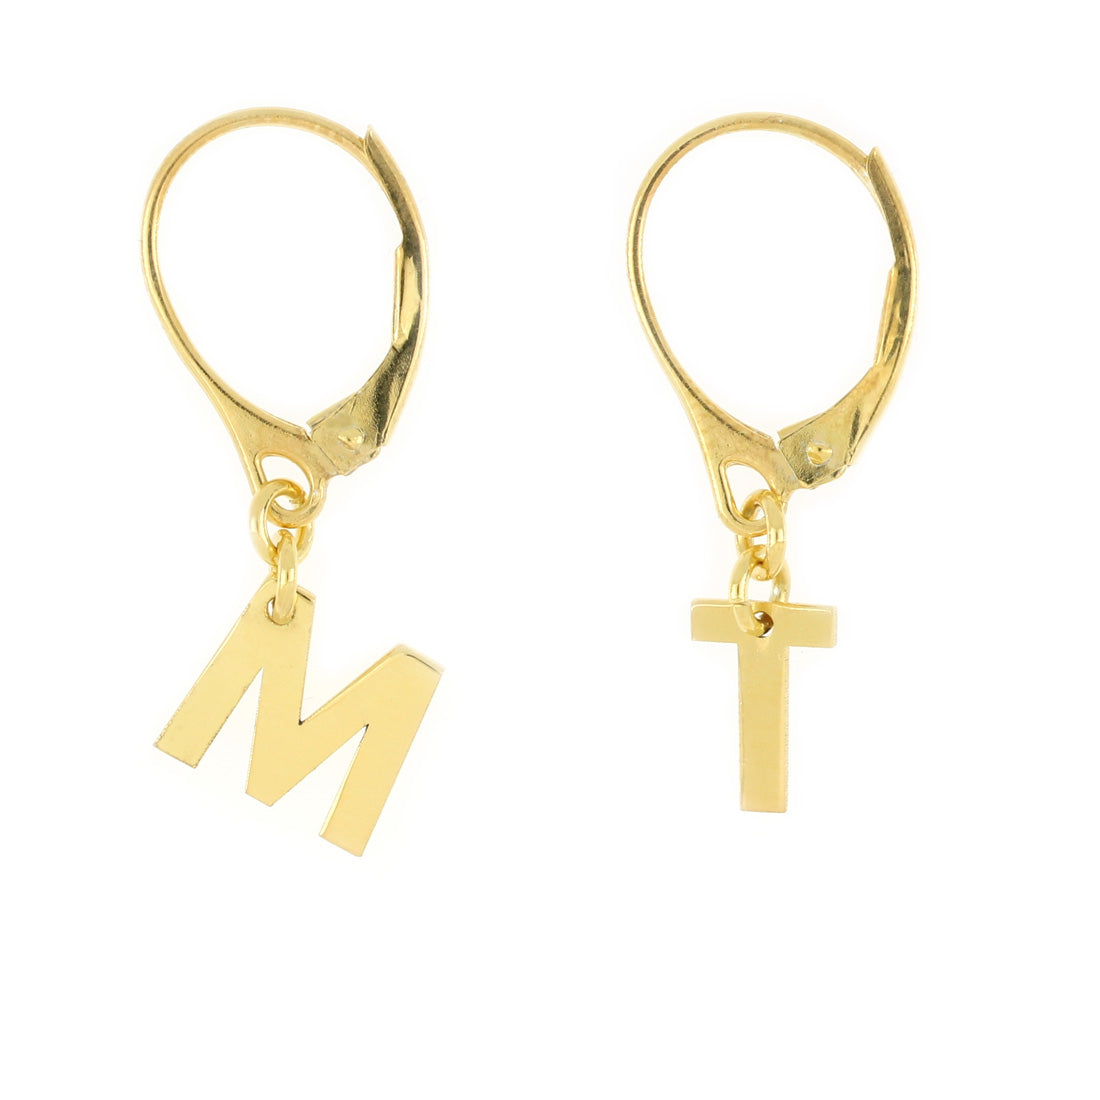 Orecchini con lettere M e T maiuscole, chiusura a monachella. Realizzati in argento placcato oro